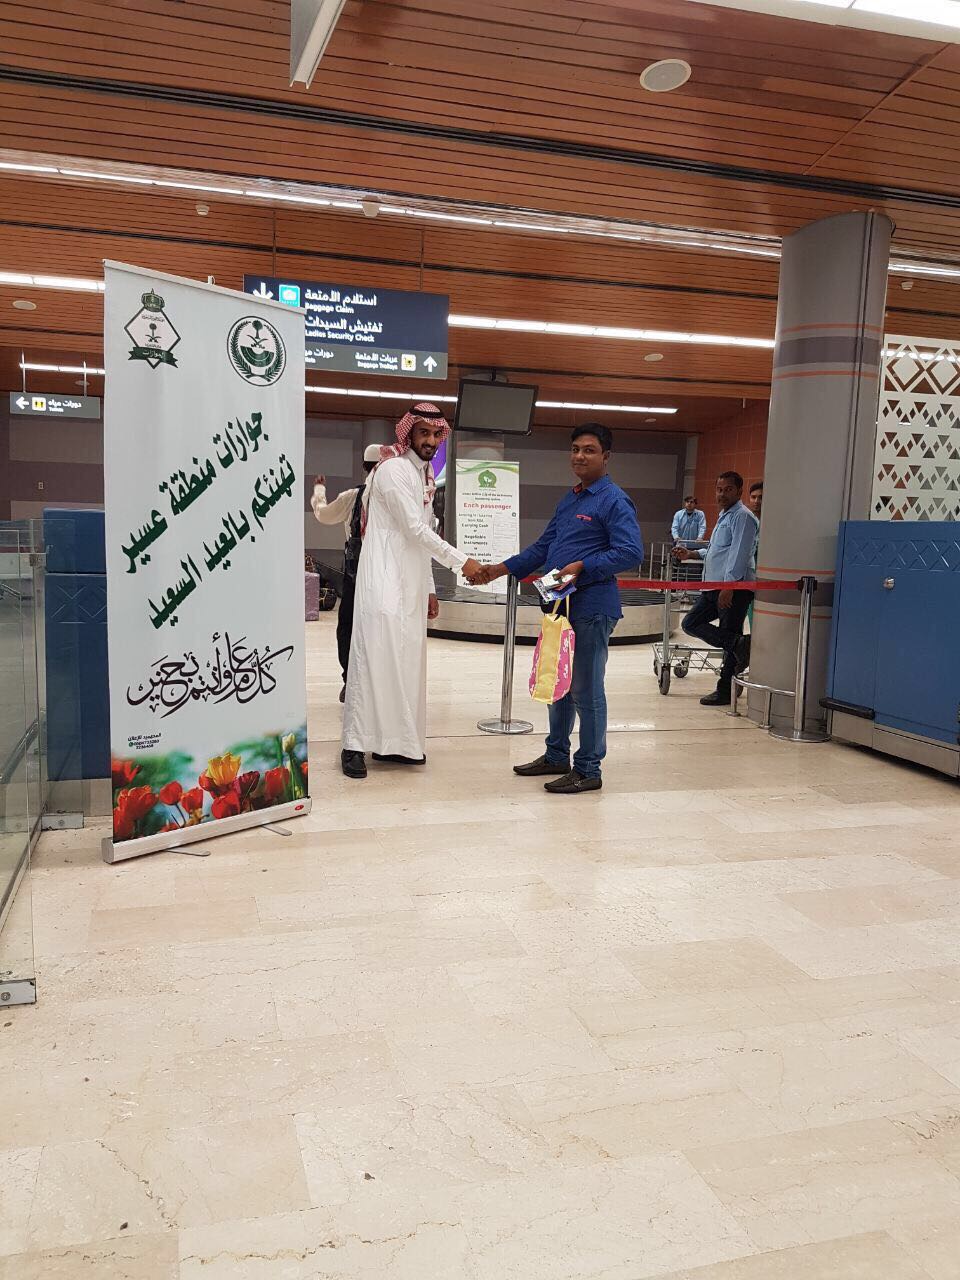 بالصور.. جوازات مطار أبها تقدم هدايا للمسافرين بمناسبة عيد الفطر